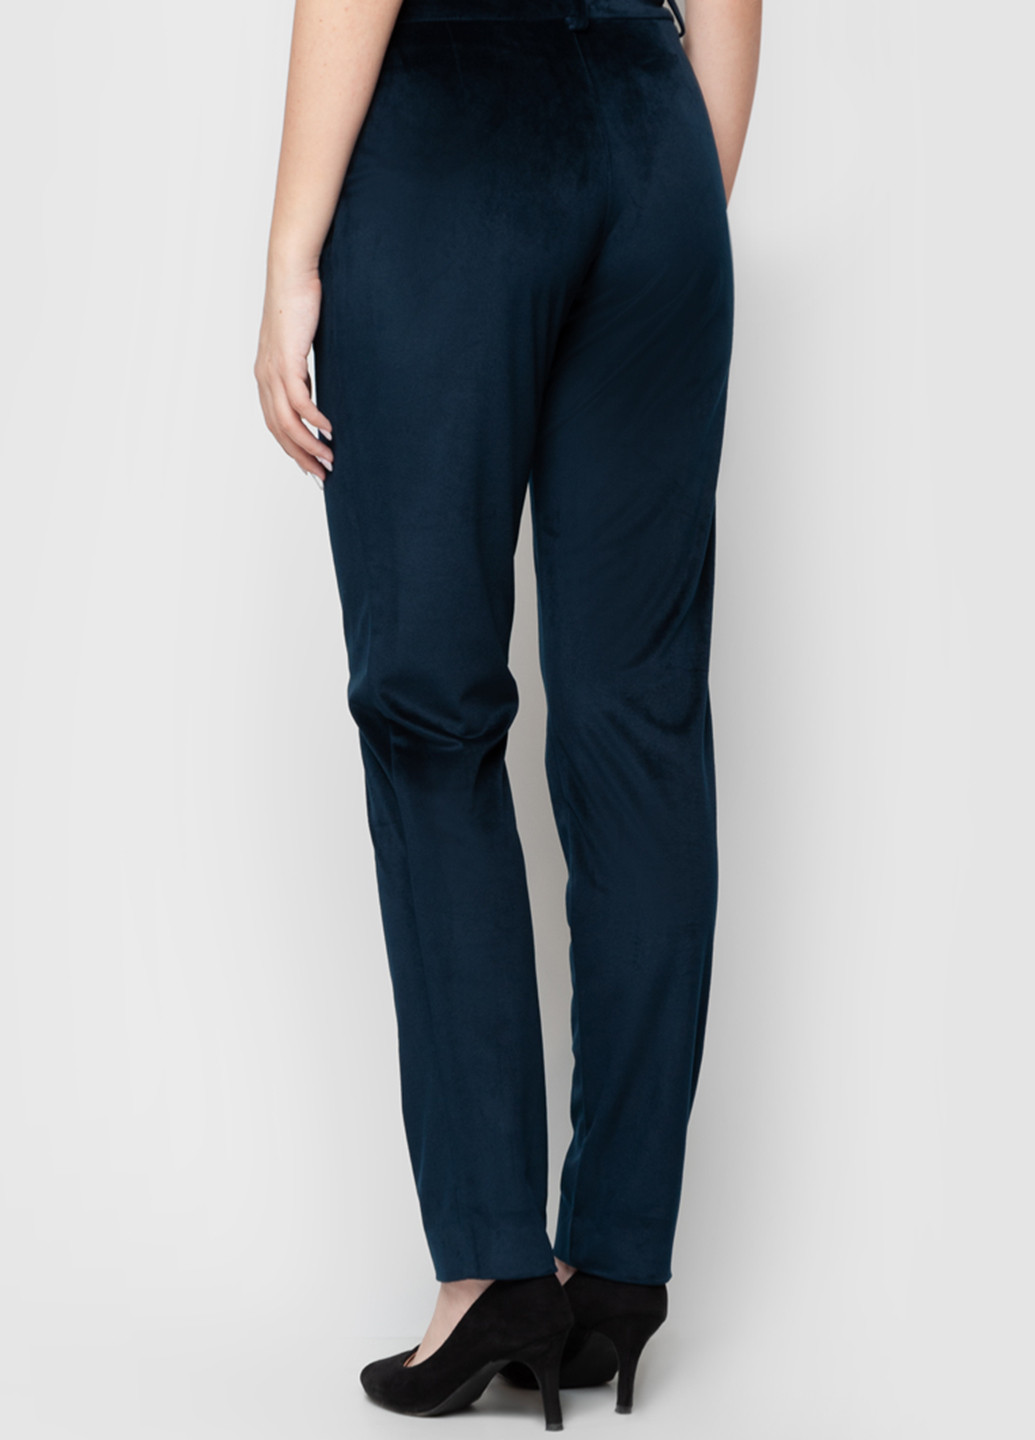 Темно-синие классические демисезонные классические брюки Arber Woman